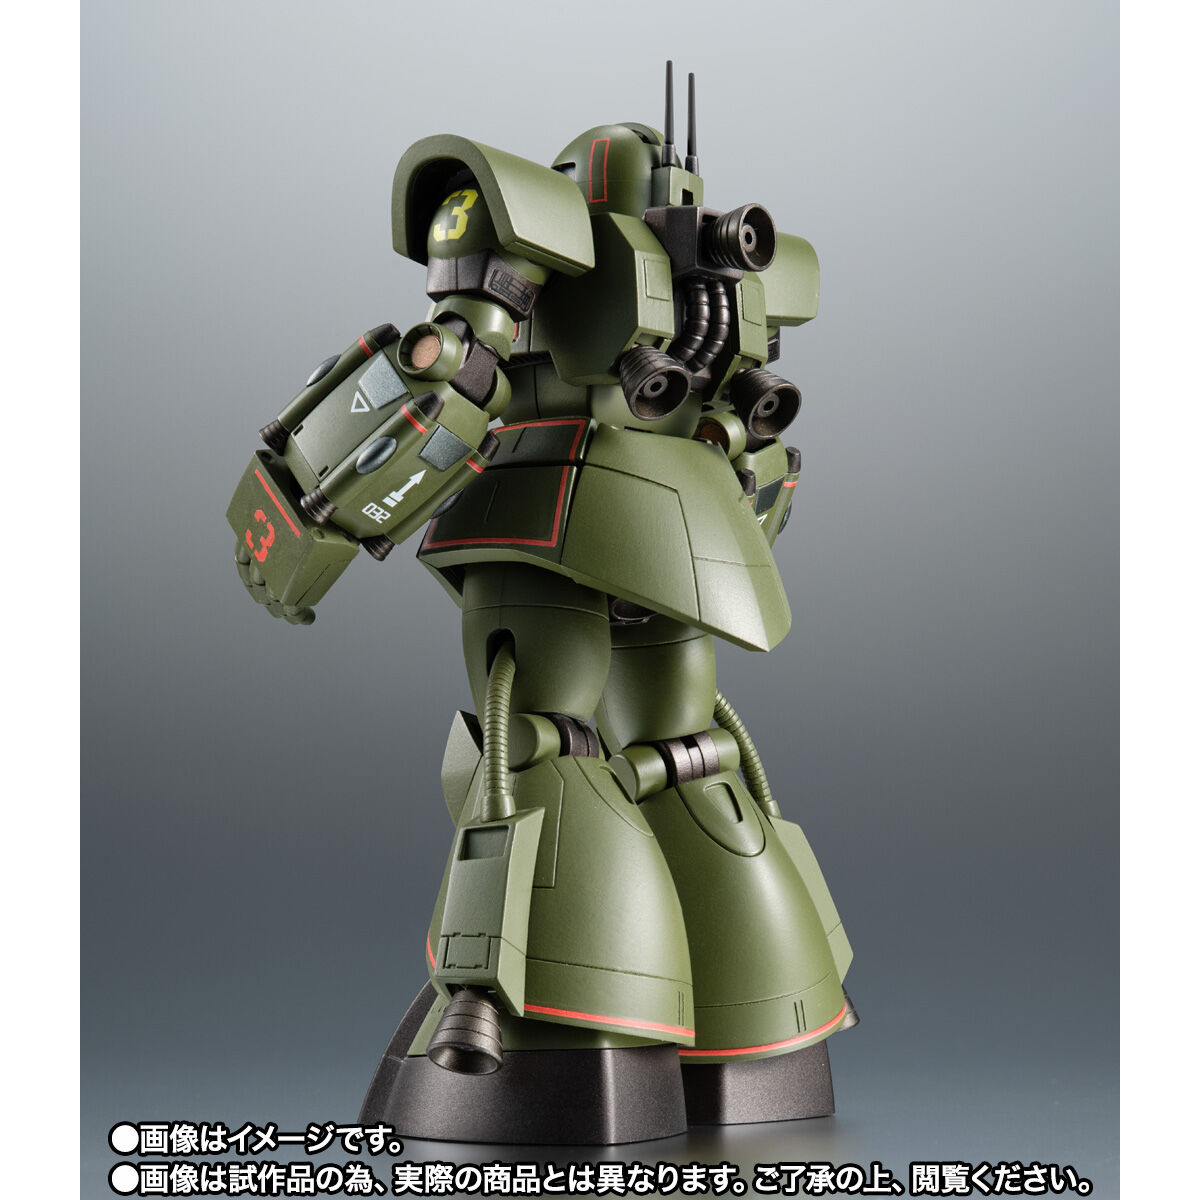 【限定販売】ROBOT魂〈SIDE MS〉『MS-06Z サイコミュ試験用ザク ver. A.N.I.M.E.』機動戦士ガンダム MSV 可動フィギュア-003